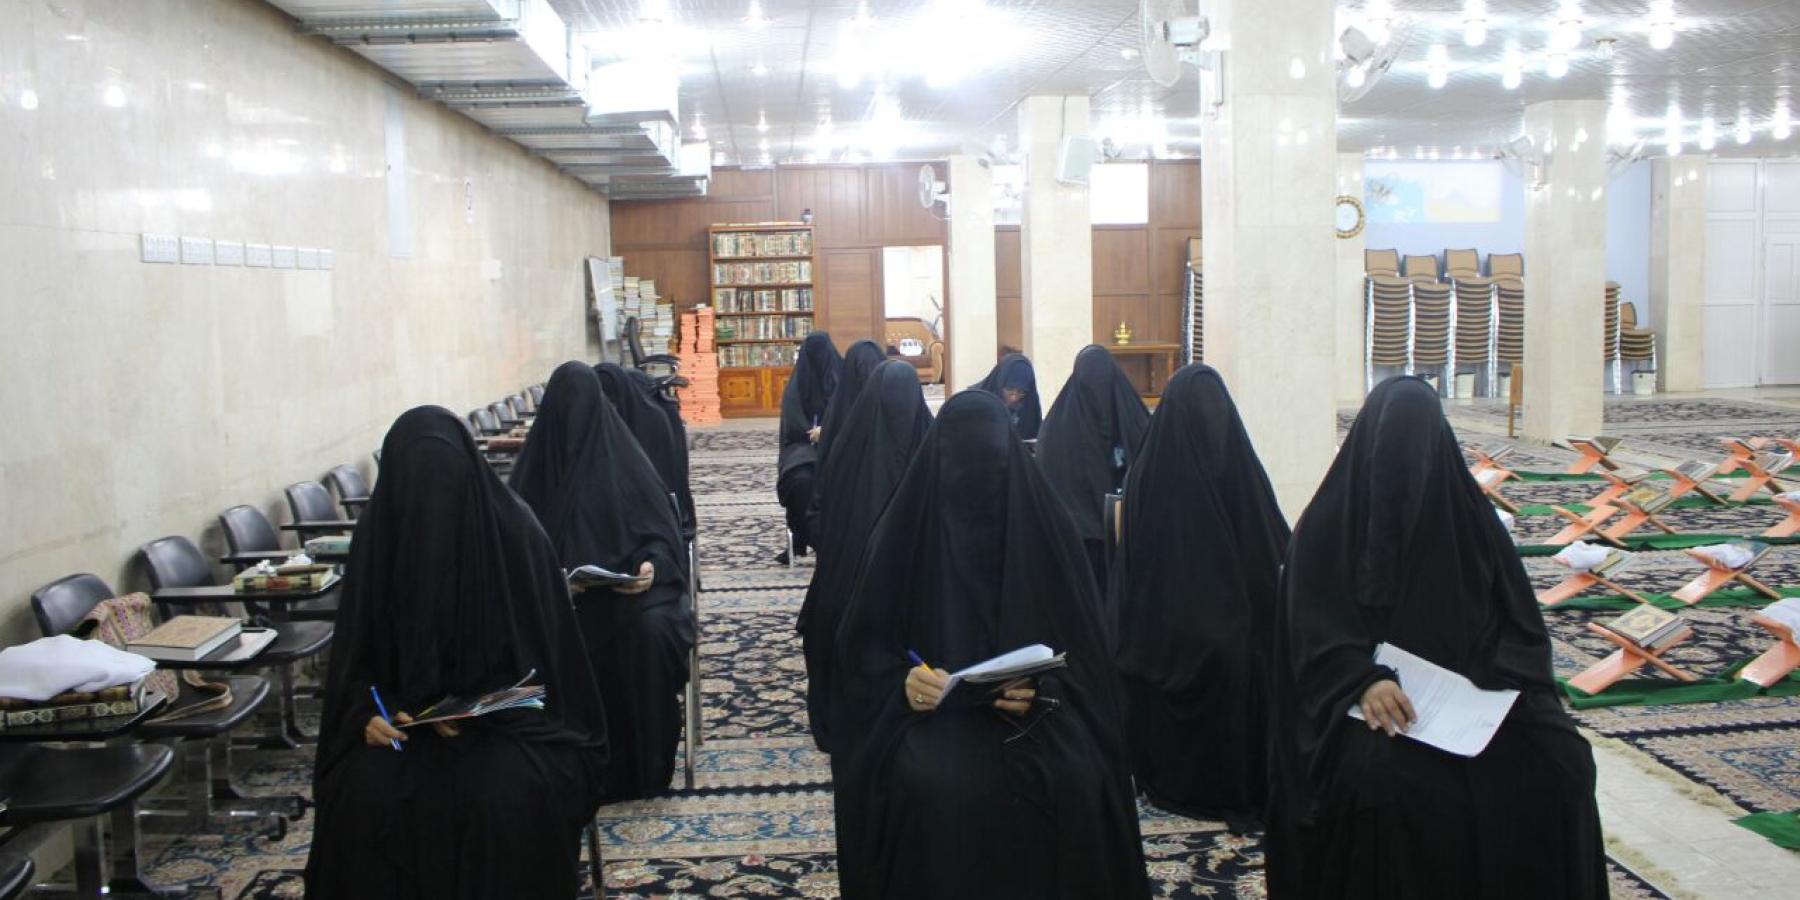 شعبة التعليم الديني النسوي تطلق مسابقتها الرمضانية